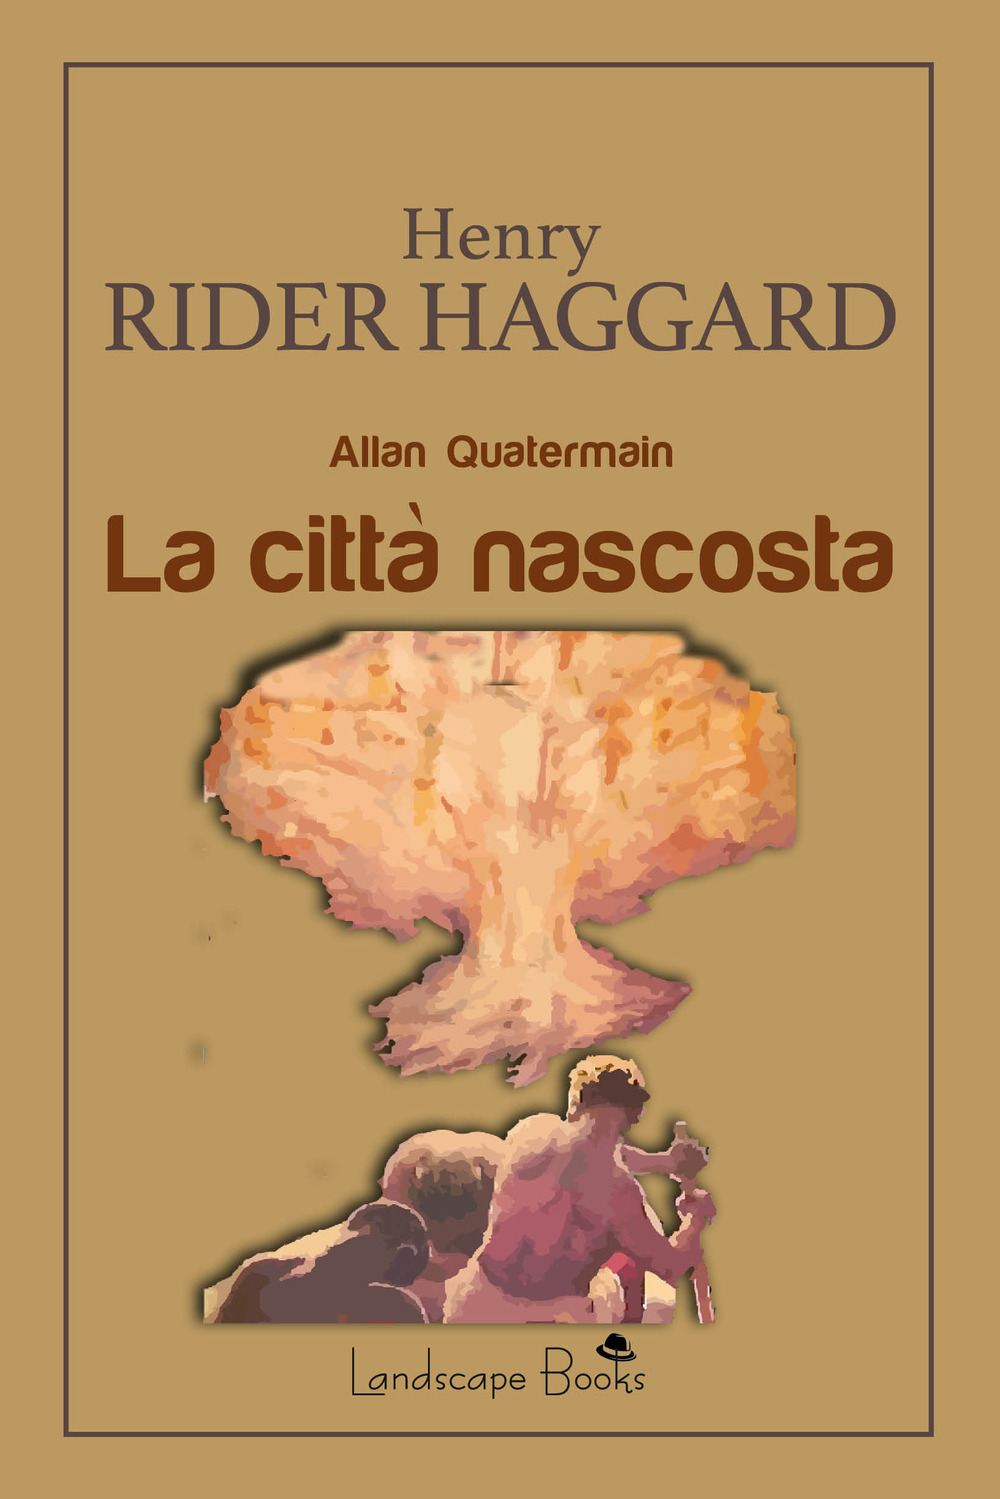 Libri Haggard Henry Rider - La Citta Nascosta. Allan Quatermain NUOVO SIGILLATO, EDIZIONE DEL 16/02/2022 SUBITO DISPONIBILE